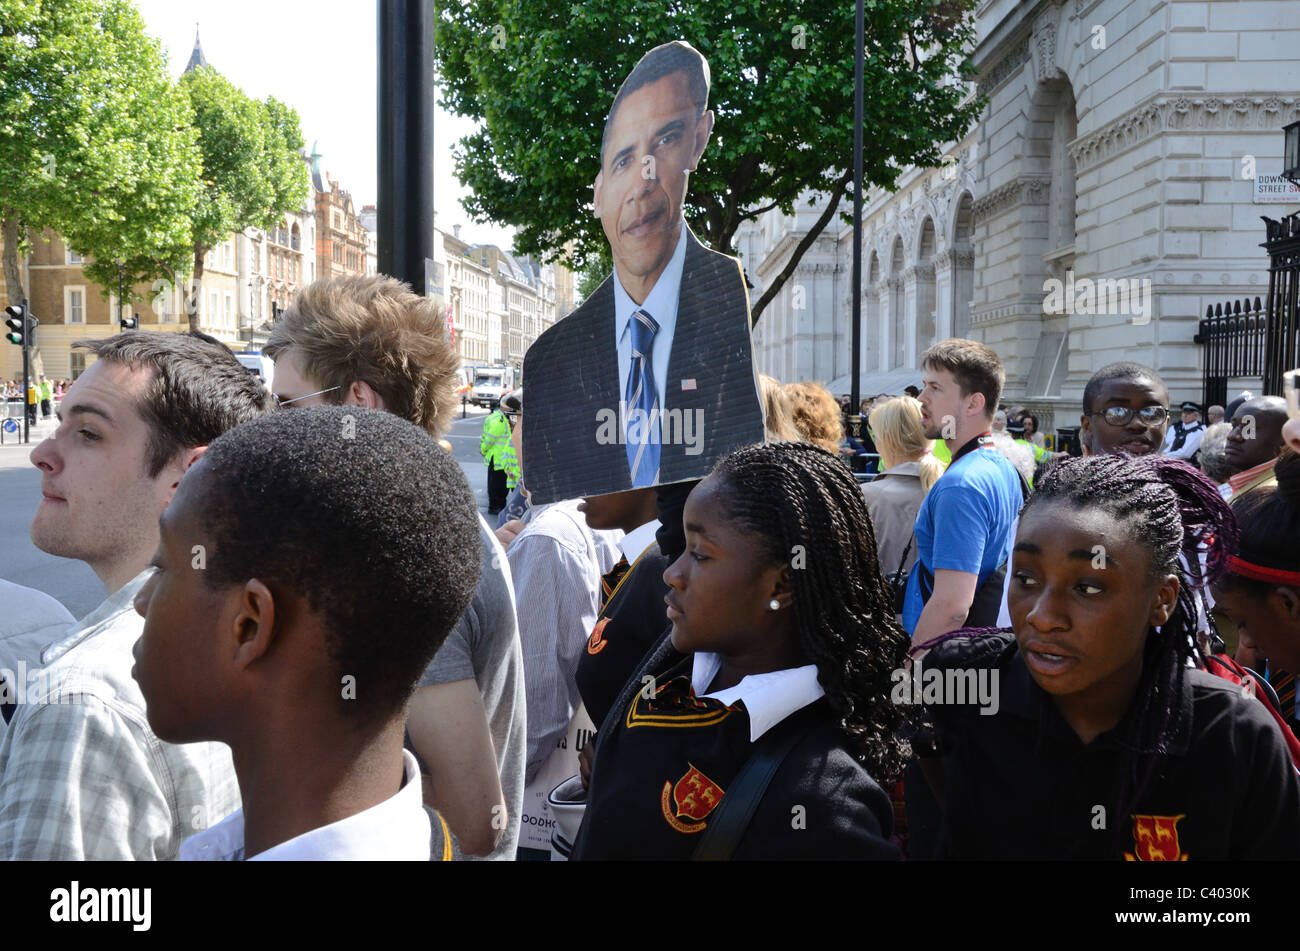 Scuola nera ragazze in attesa di baracca Obama l'arrivo a Downing St, 24 maggio 2011 Foto Stock